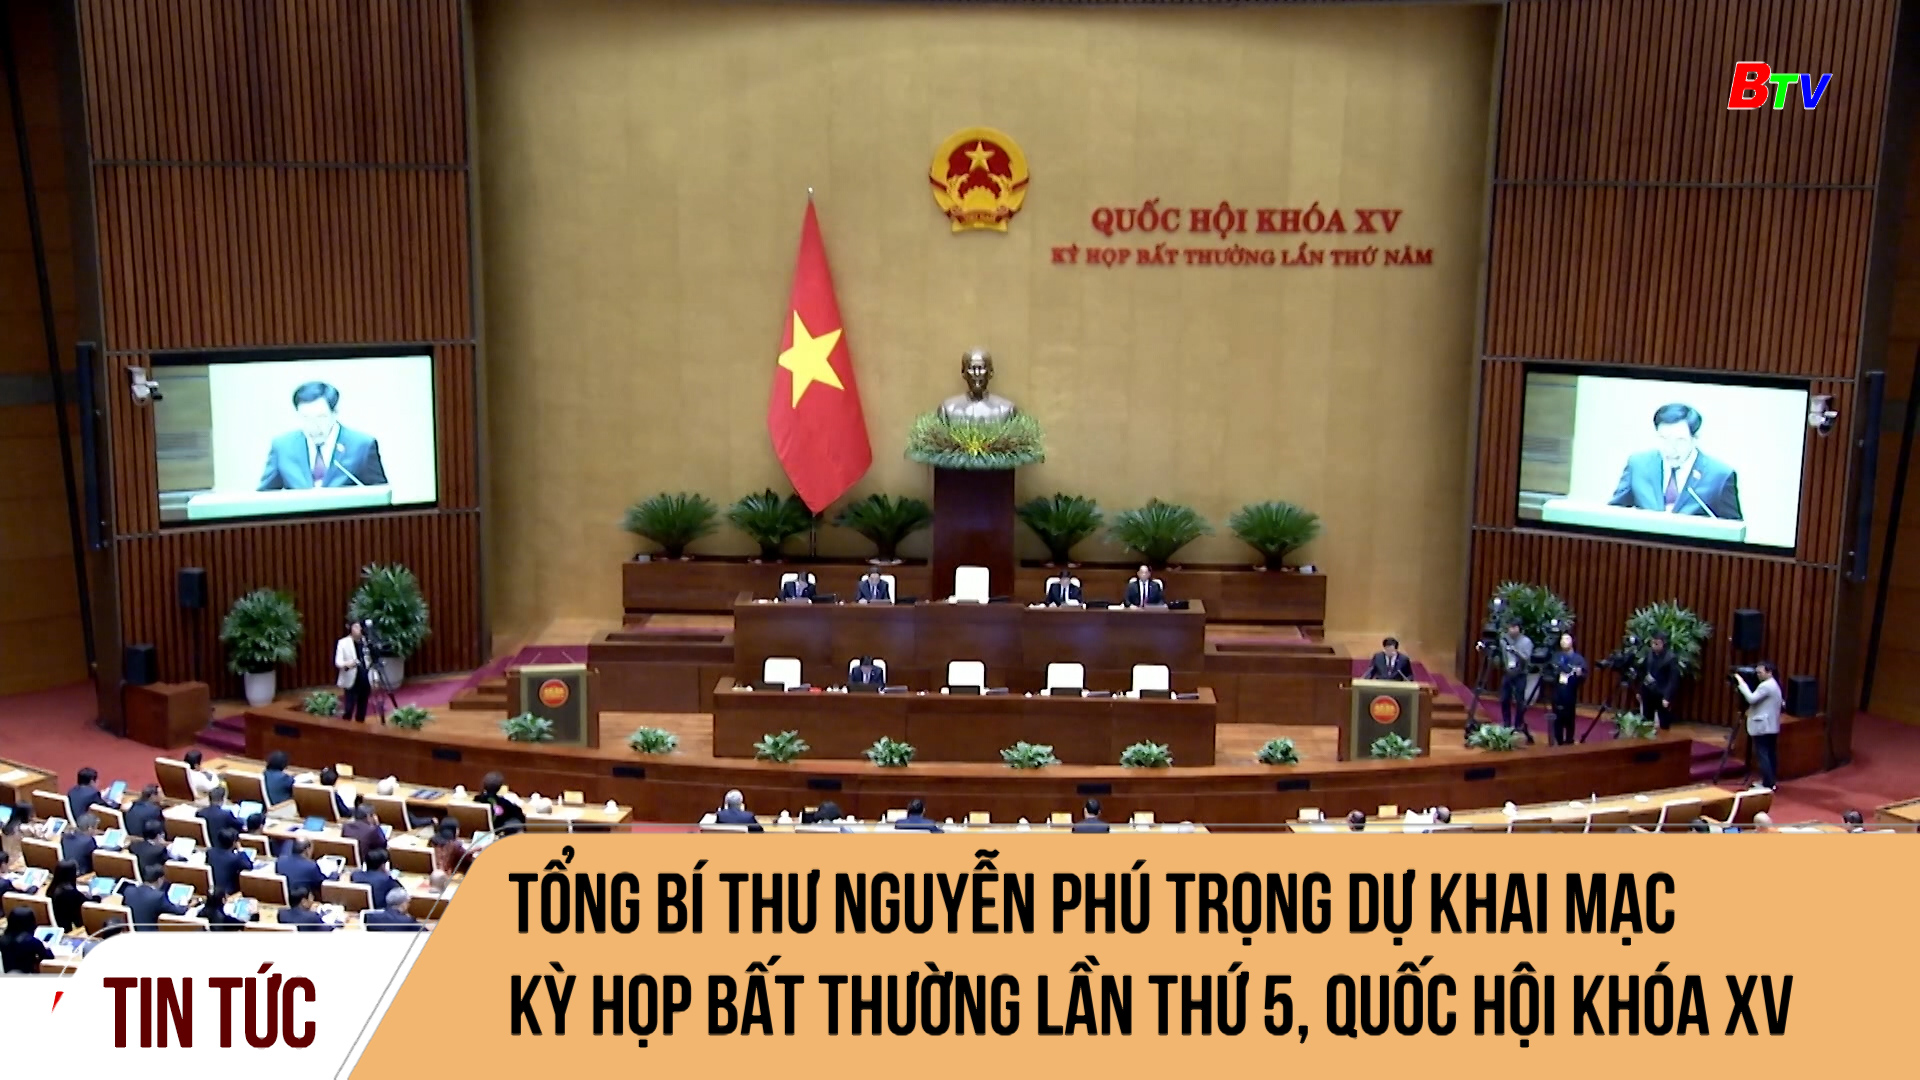 Tổng Bí thư Nguyễn Phú Trọng dự khai mạc Kỳ họp bất thường lần thứ 5, Quốc hội khóa XV	